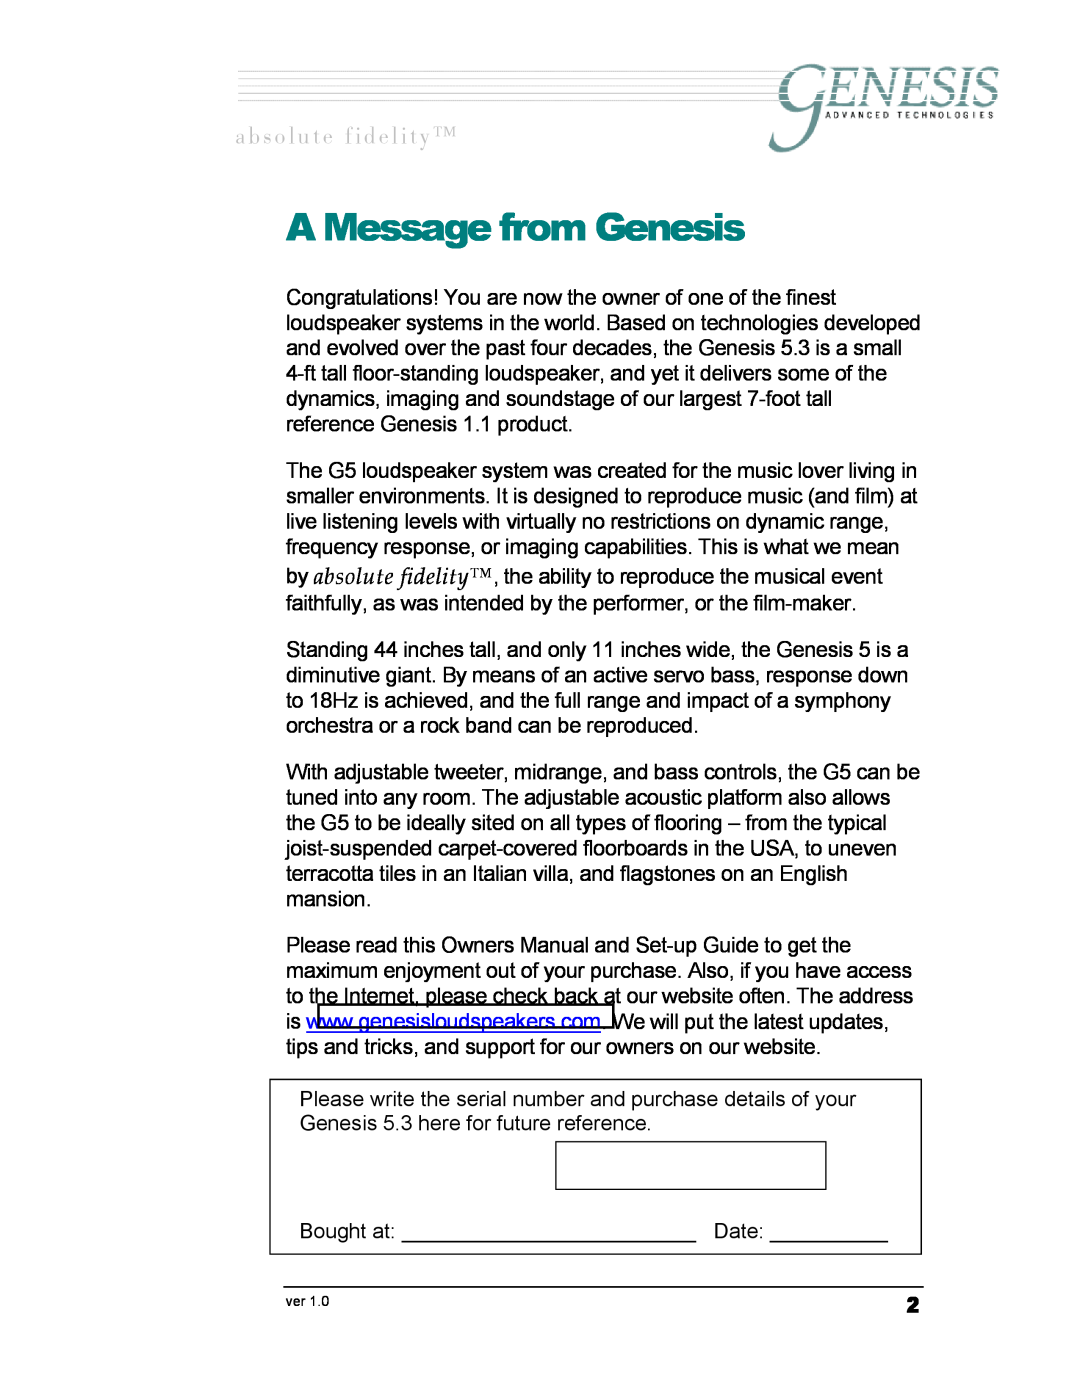 Genesis Advanced Technologies G5.3 owner manual A Message from Genesis, ~ Ä ë ç ä ì í É = Ñ á Ç É ä á í ó 